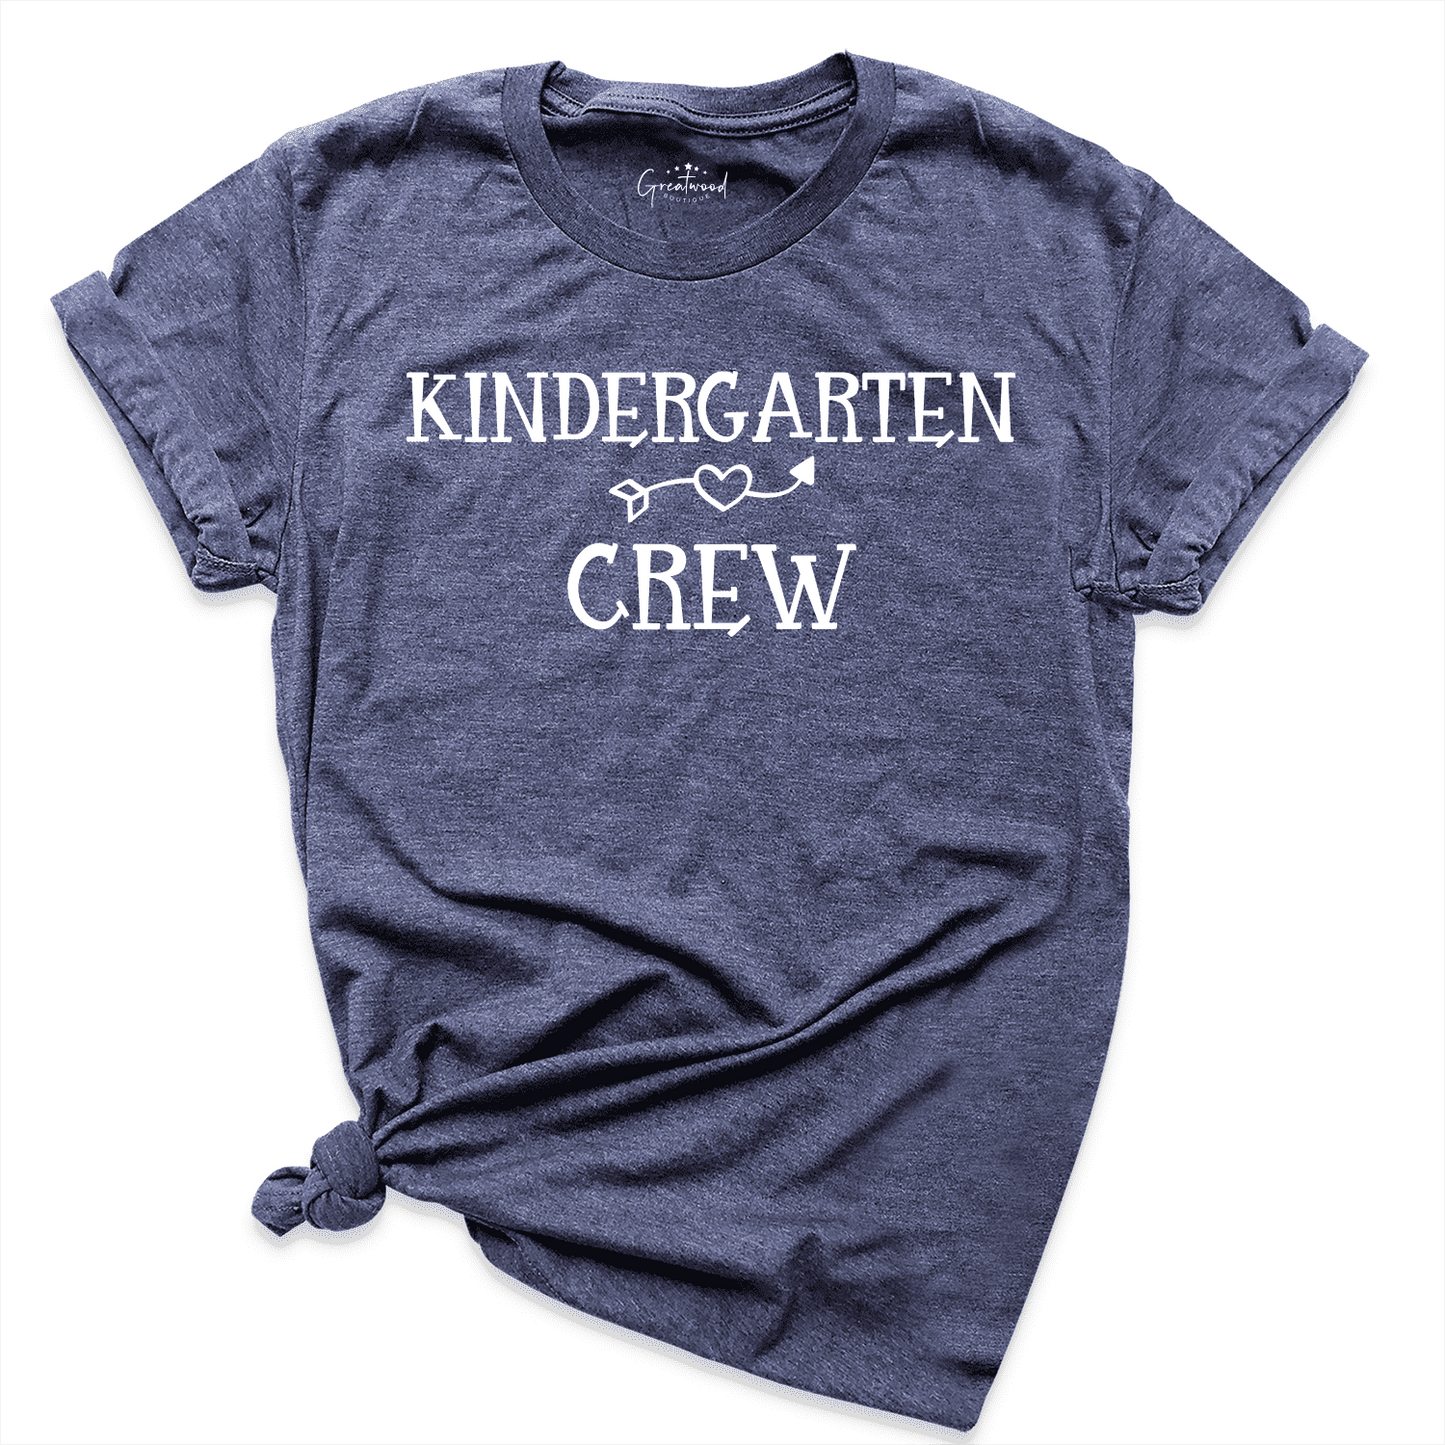 Kindergarten Crew Shirt Navy - Greatwood Boutique